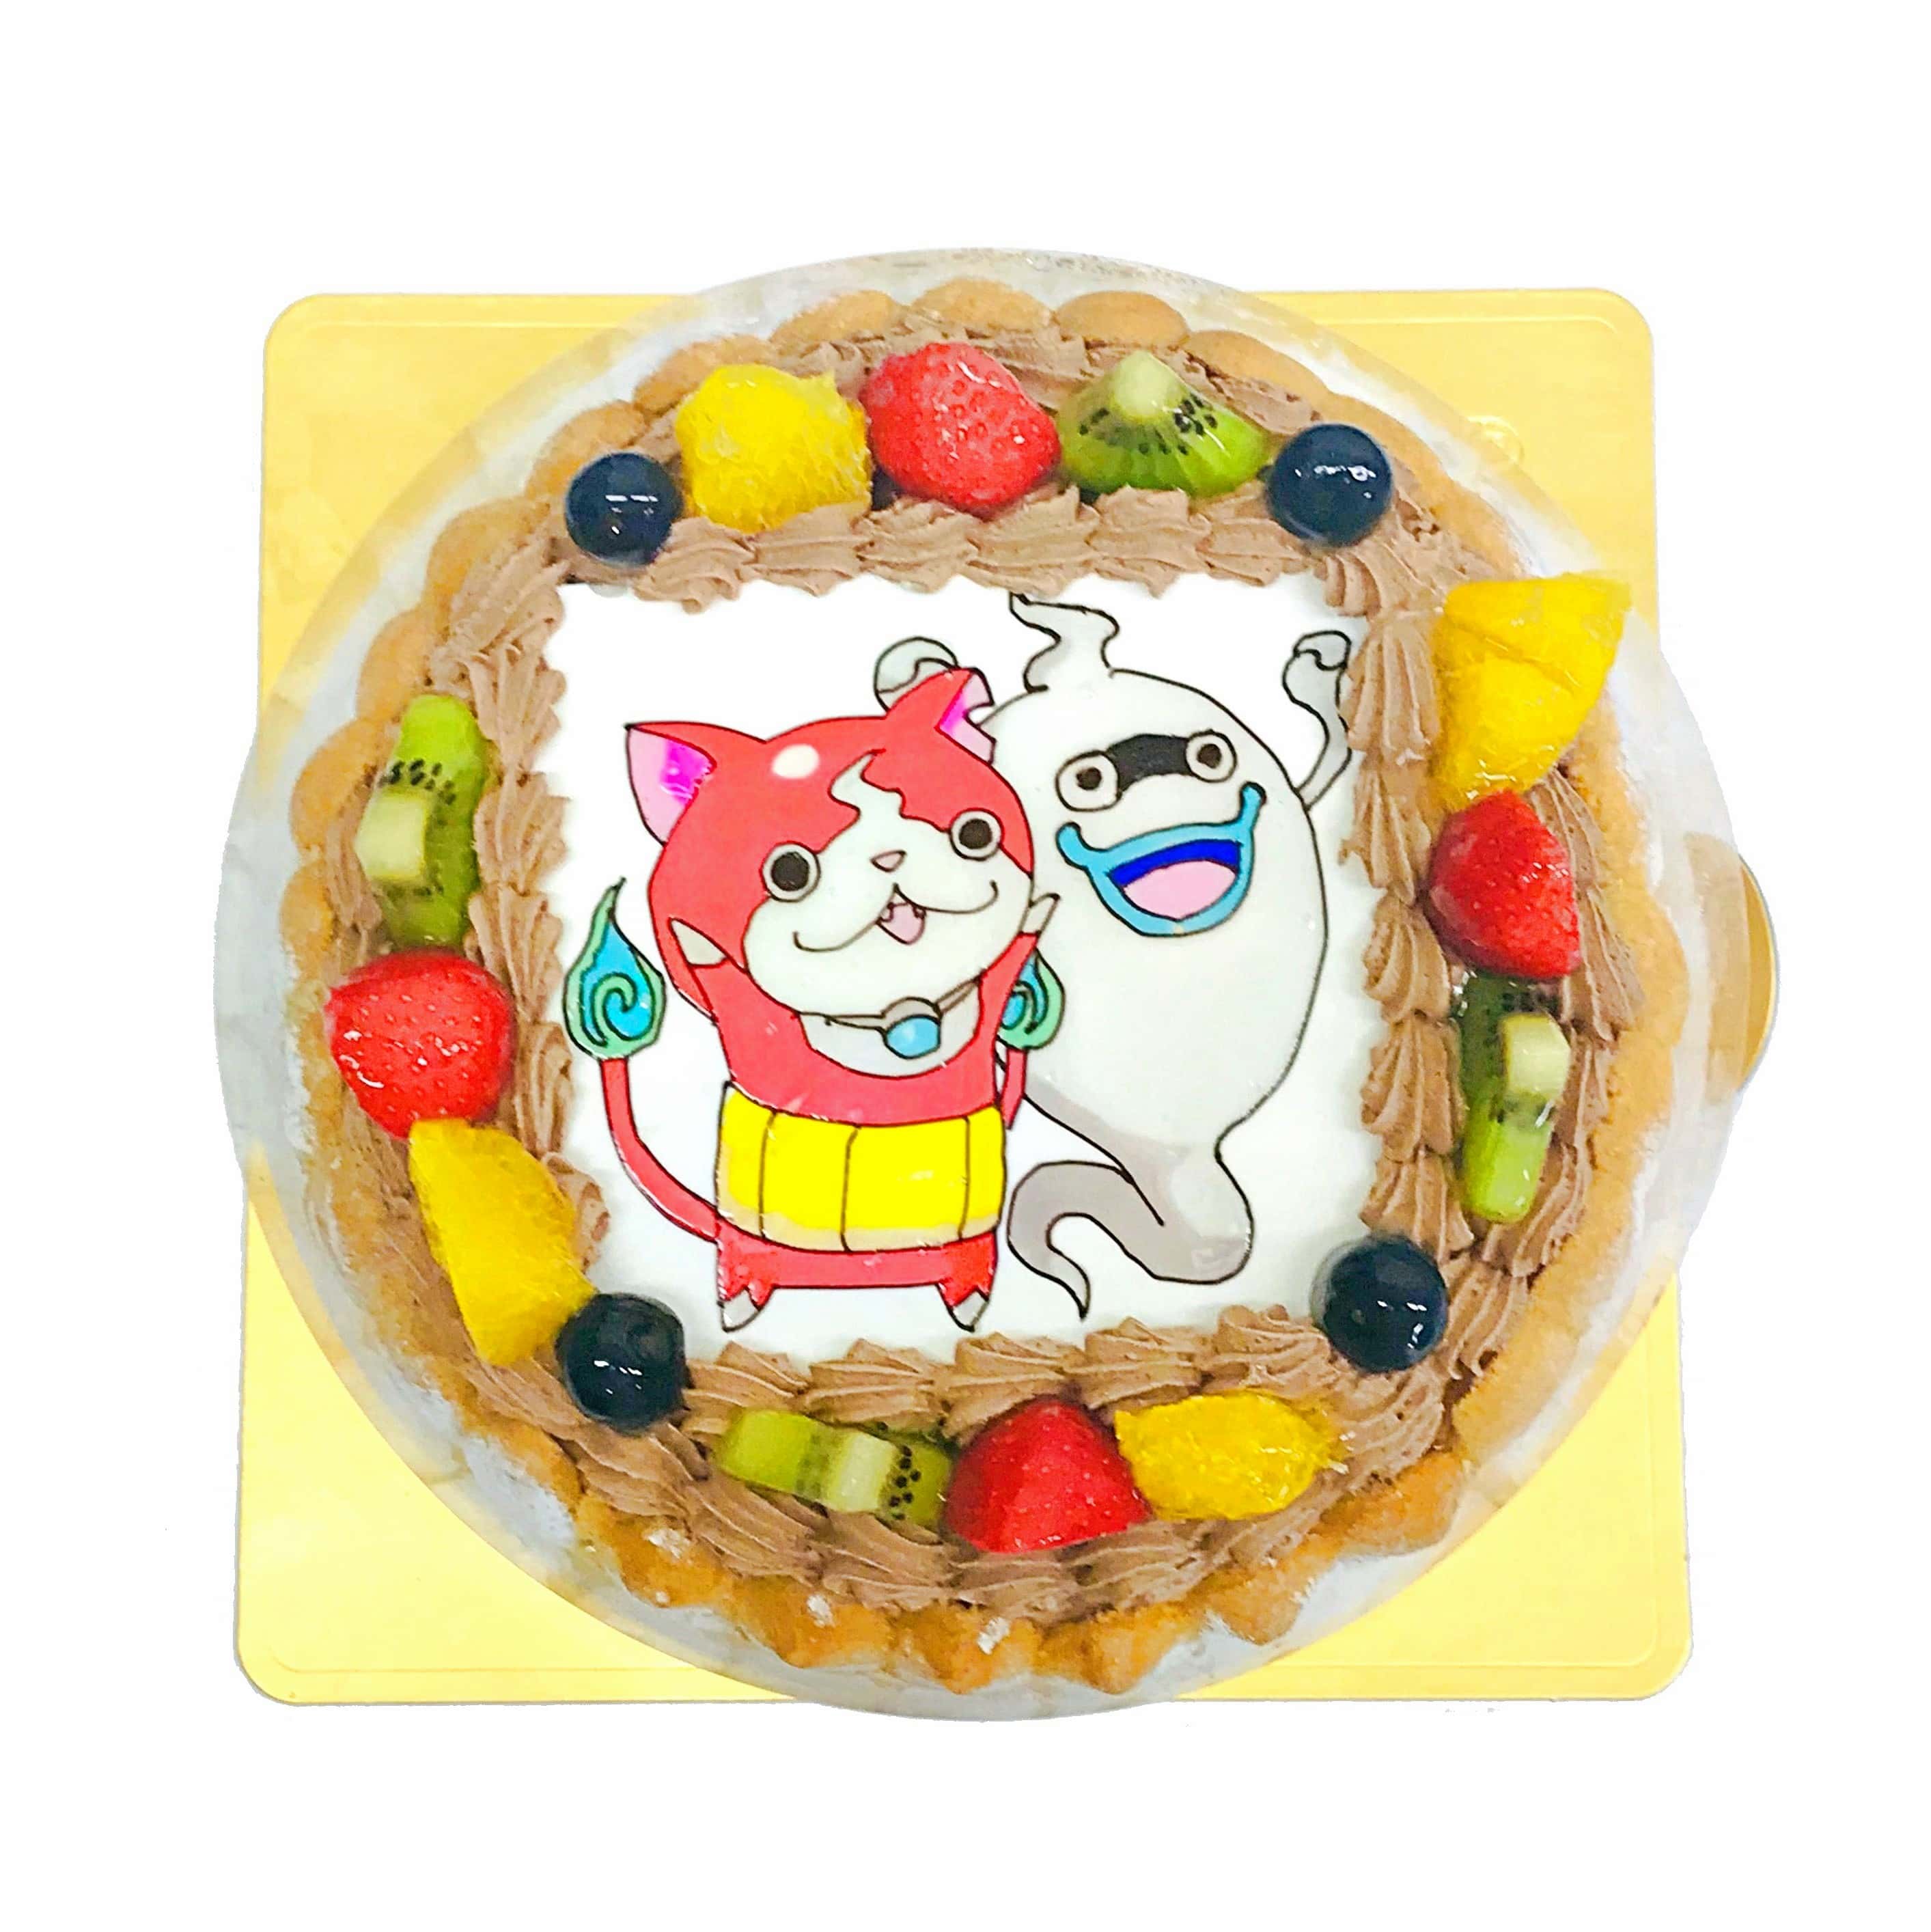 ジバニャンとウィスパー Mサイズ キャラクターケーキ通販fundeco ファンデコ